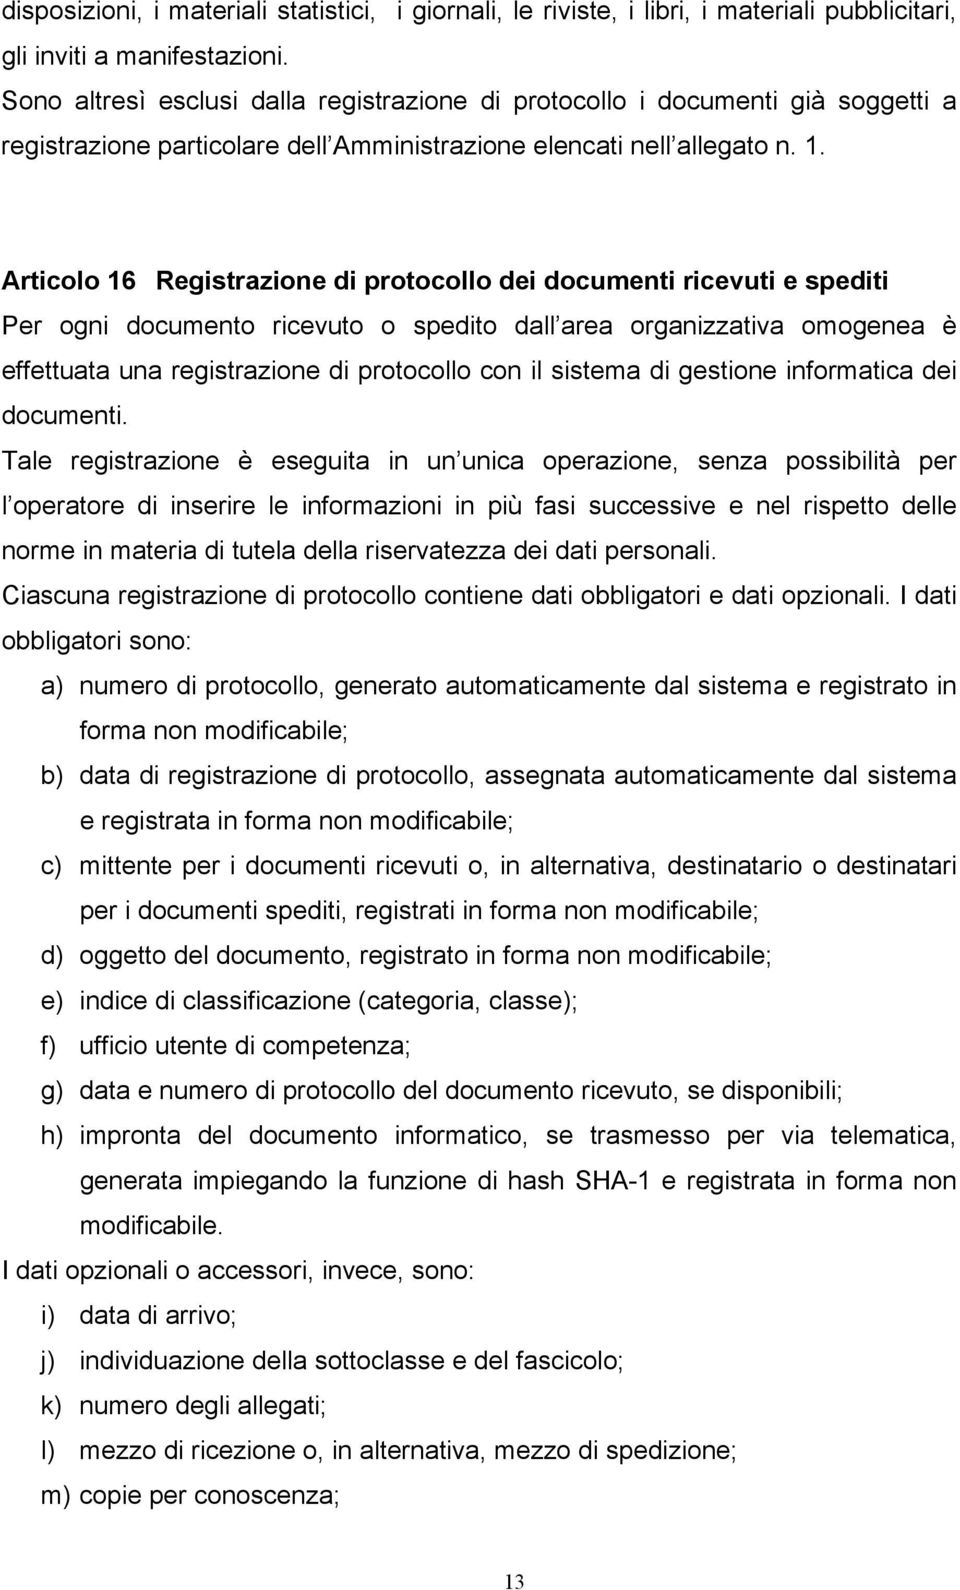 Articolo 16 Registrazione di protocollo dei documenti ricevuti e spediti Per ogni documento ricevuto o spedito dall area organizzativa omogenea è effettuata una registrazione di protocollo con il